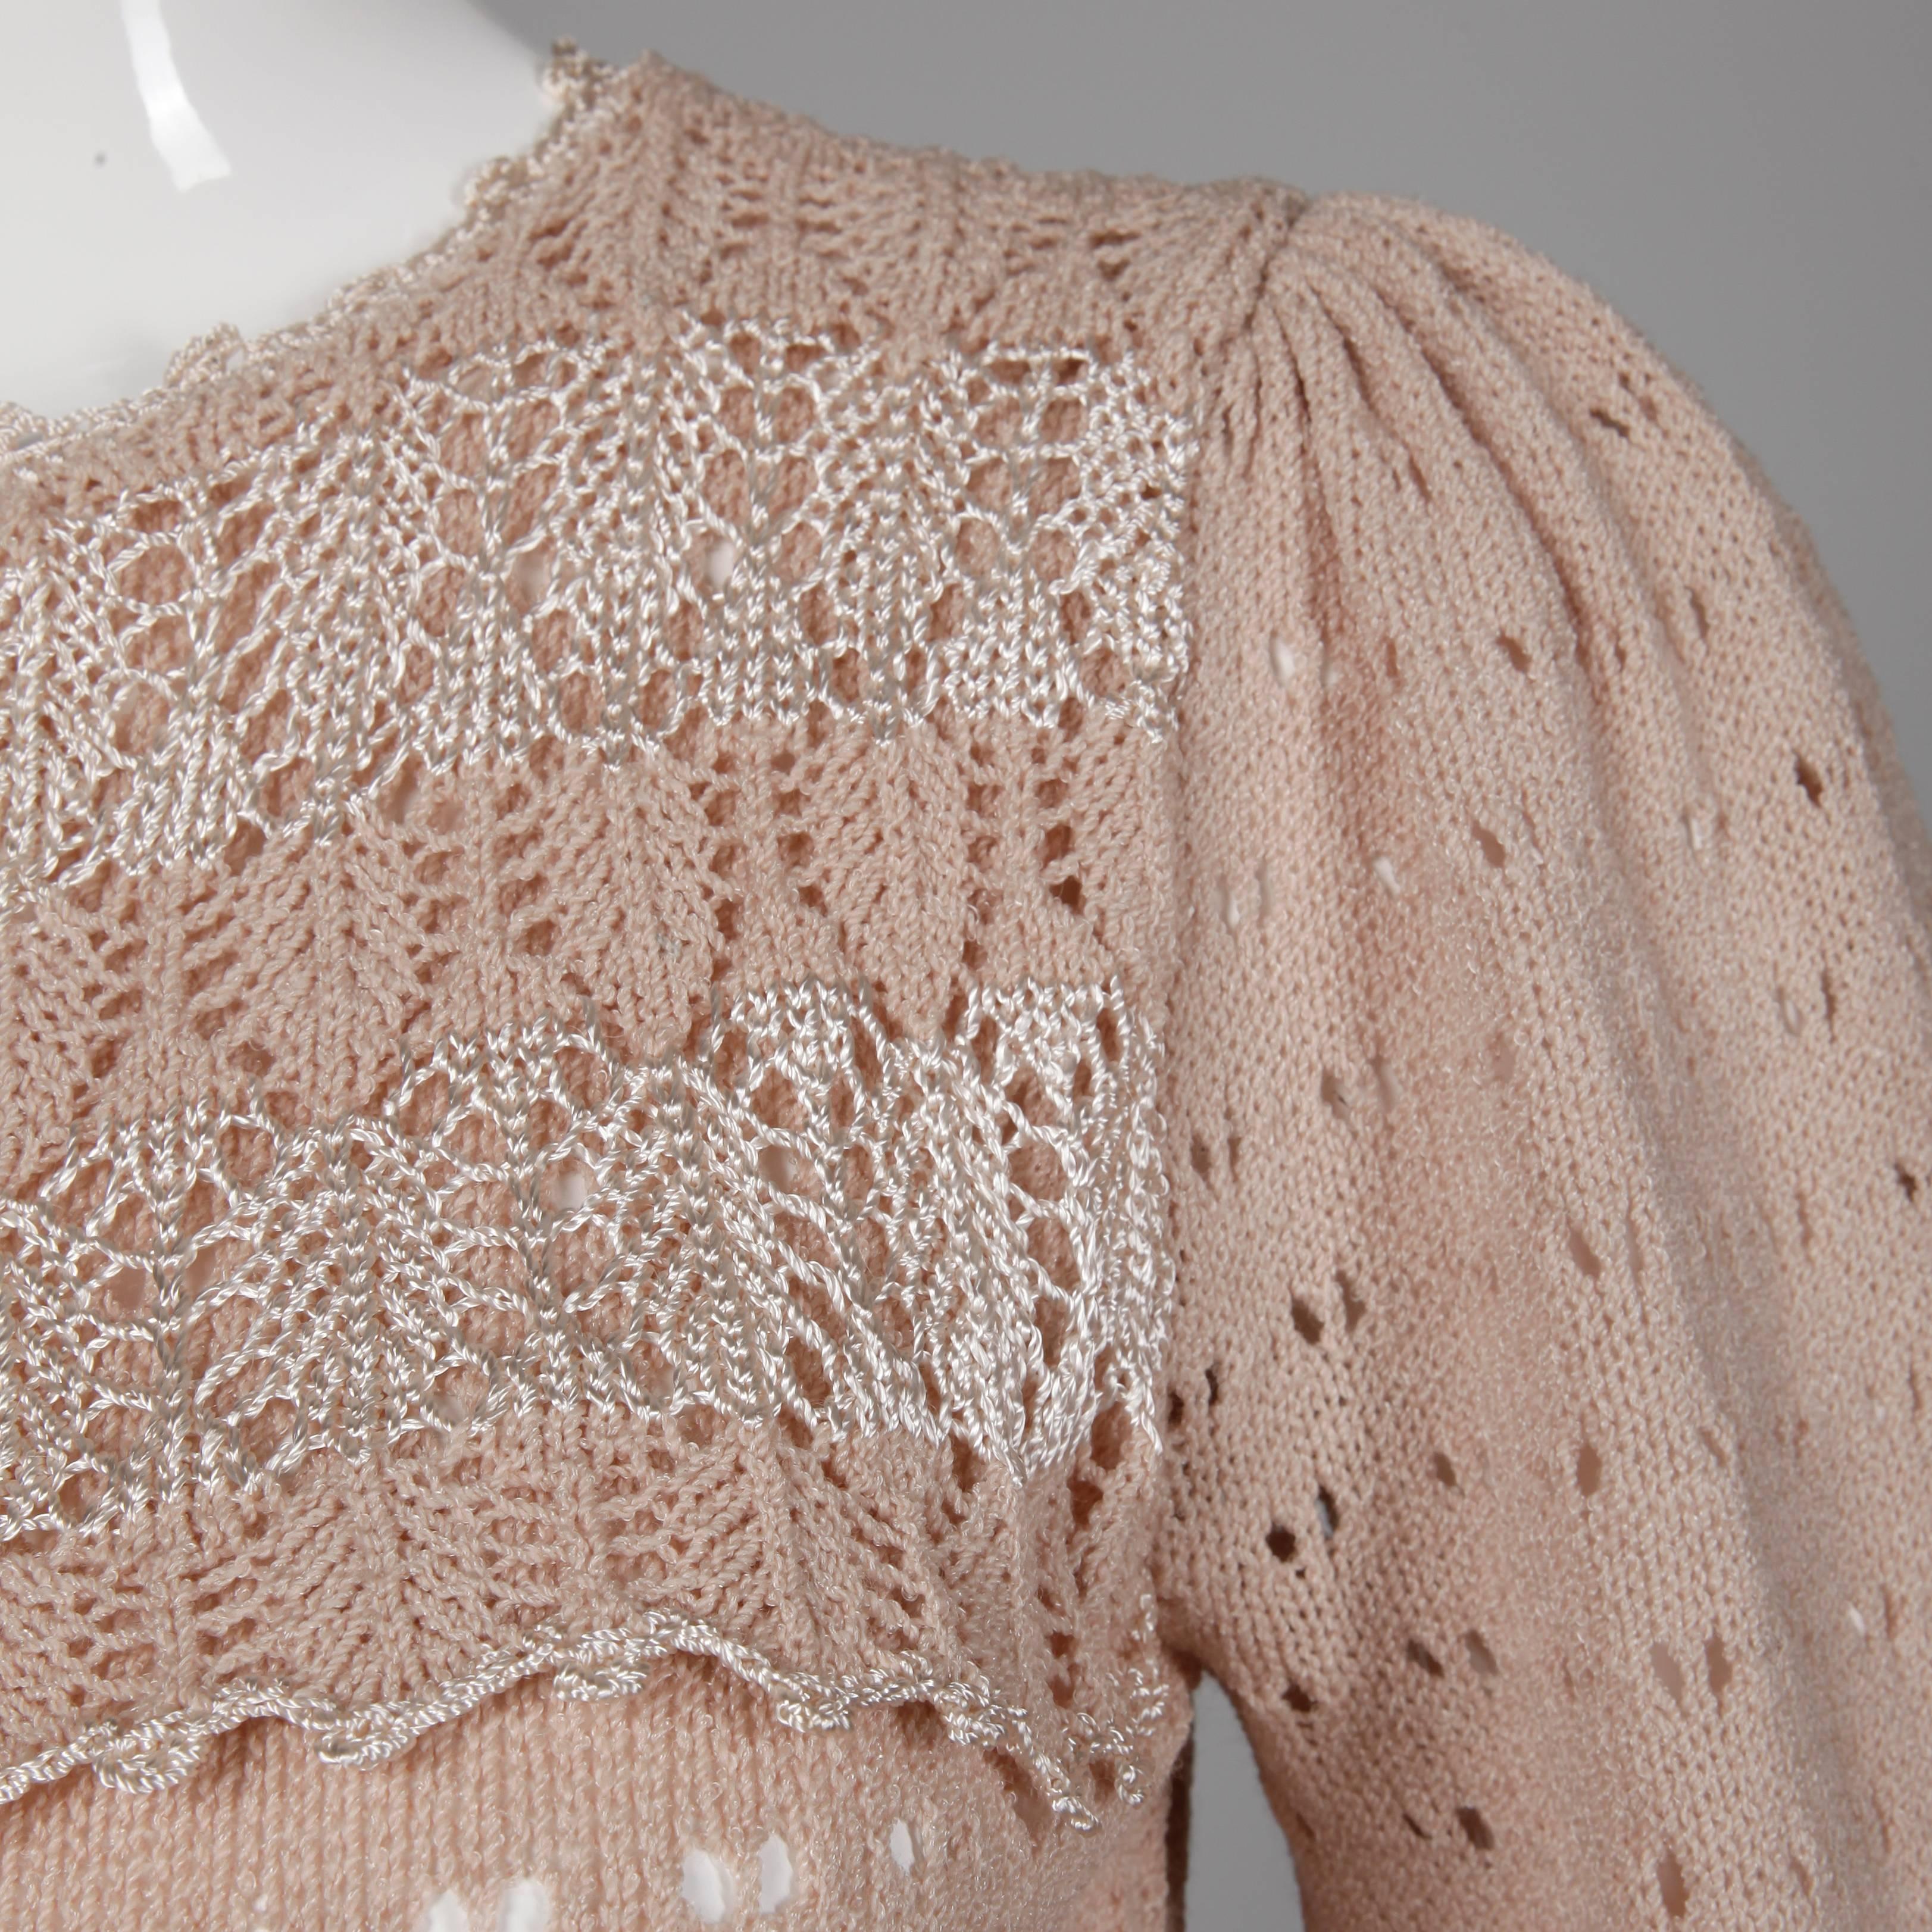 Brown 1970s Oscar de la Renta Vintage Dusty Pink/ Blush Knit + Crochet Sweater Dress